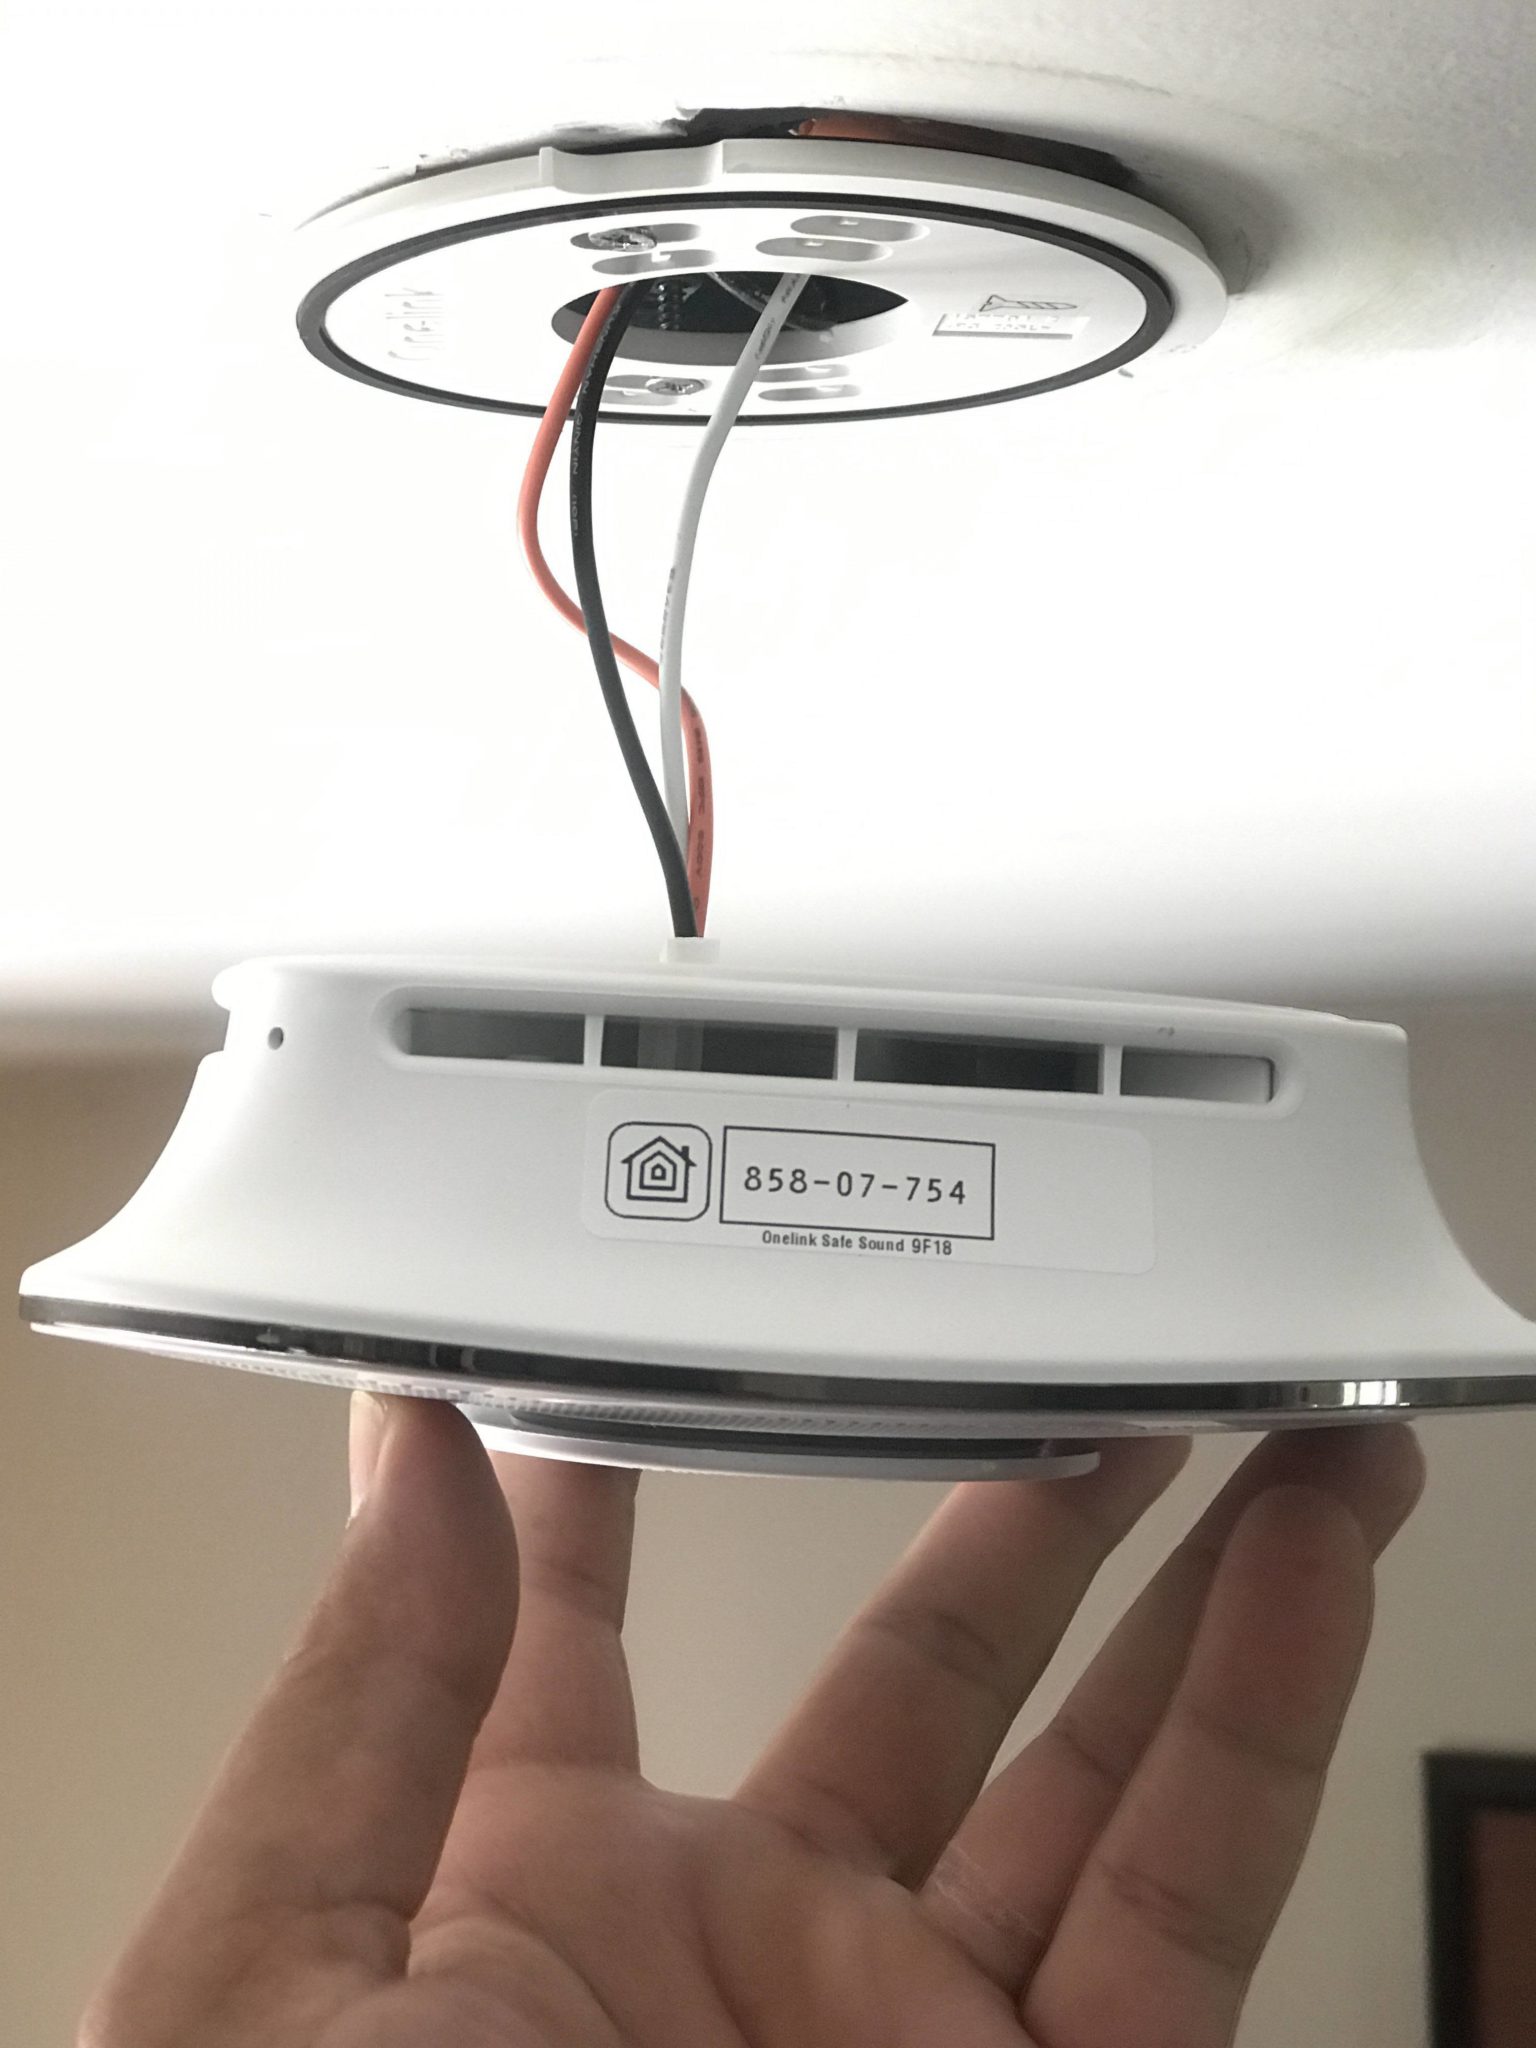 Smart smoke detector installation - Online Safe & Sound